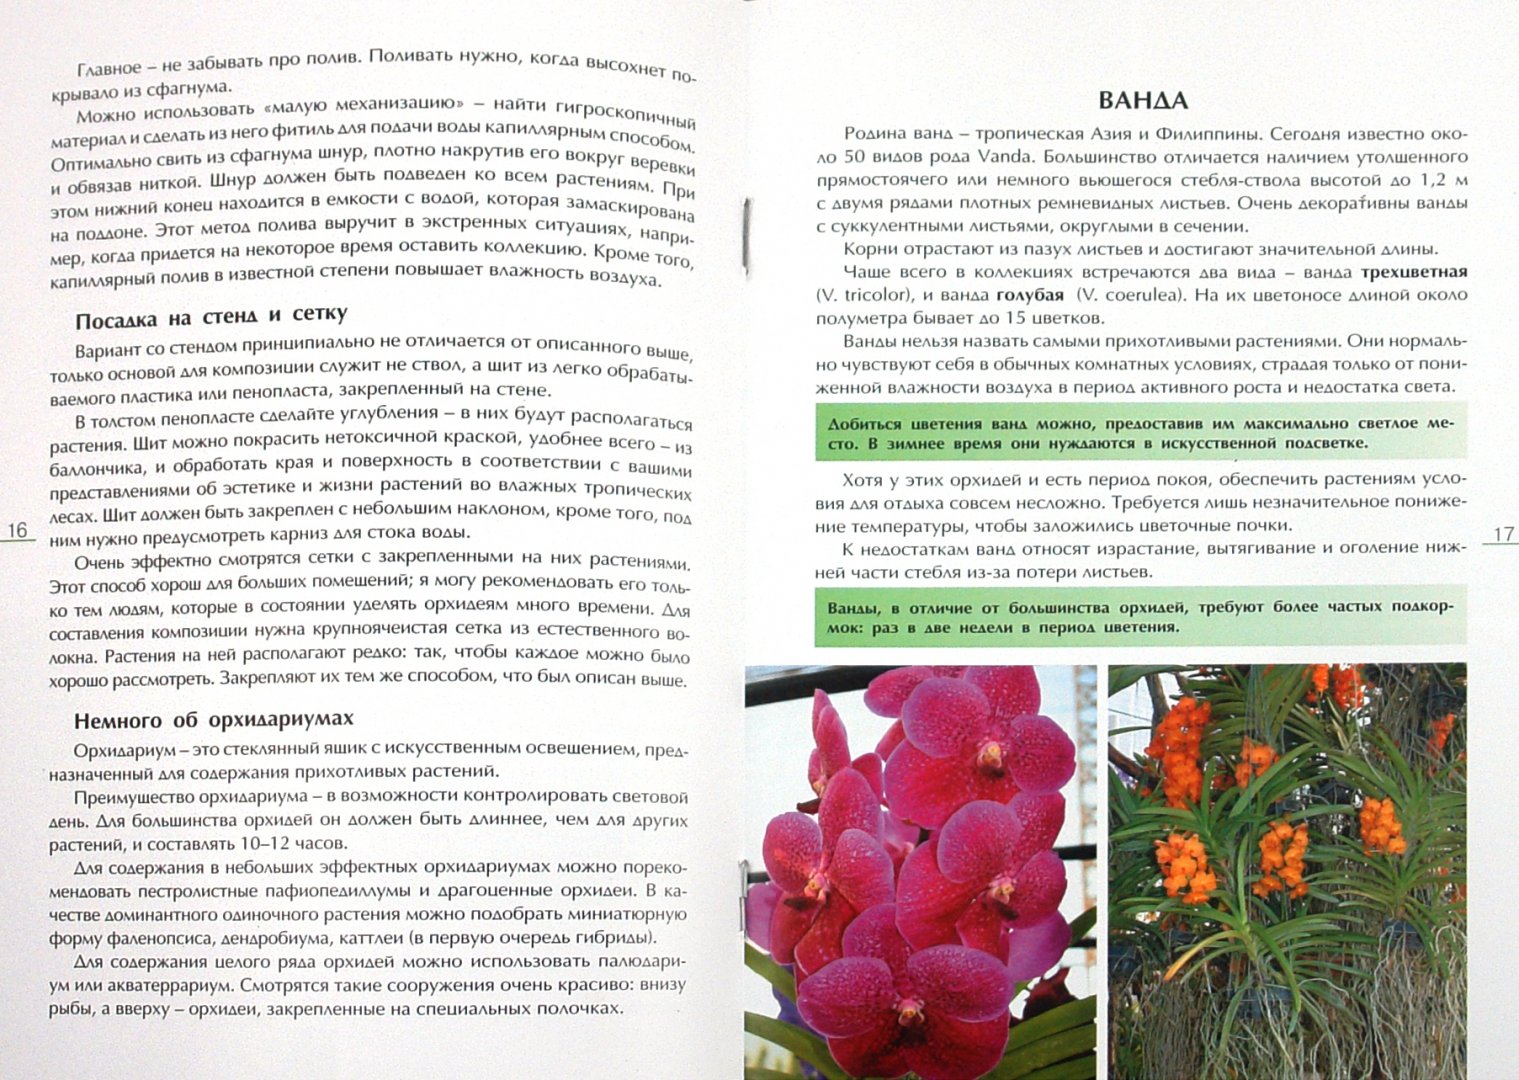 Иллюстрация 1 из 8 для Секреты ухода за орхидеями - Александр Зайцев | Лабиринт - книги. Источник: Лабиринт